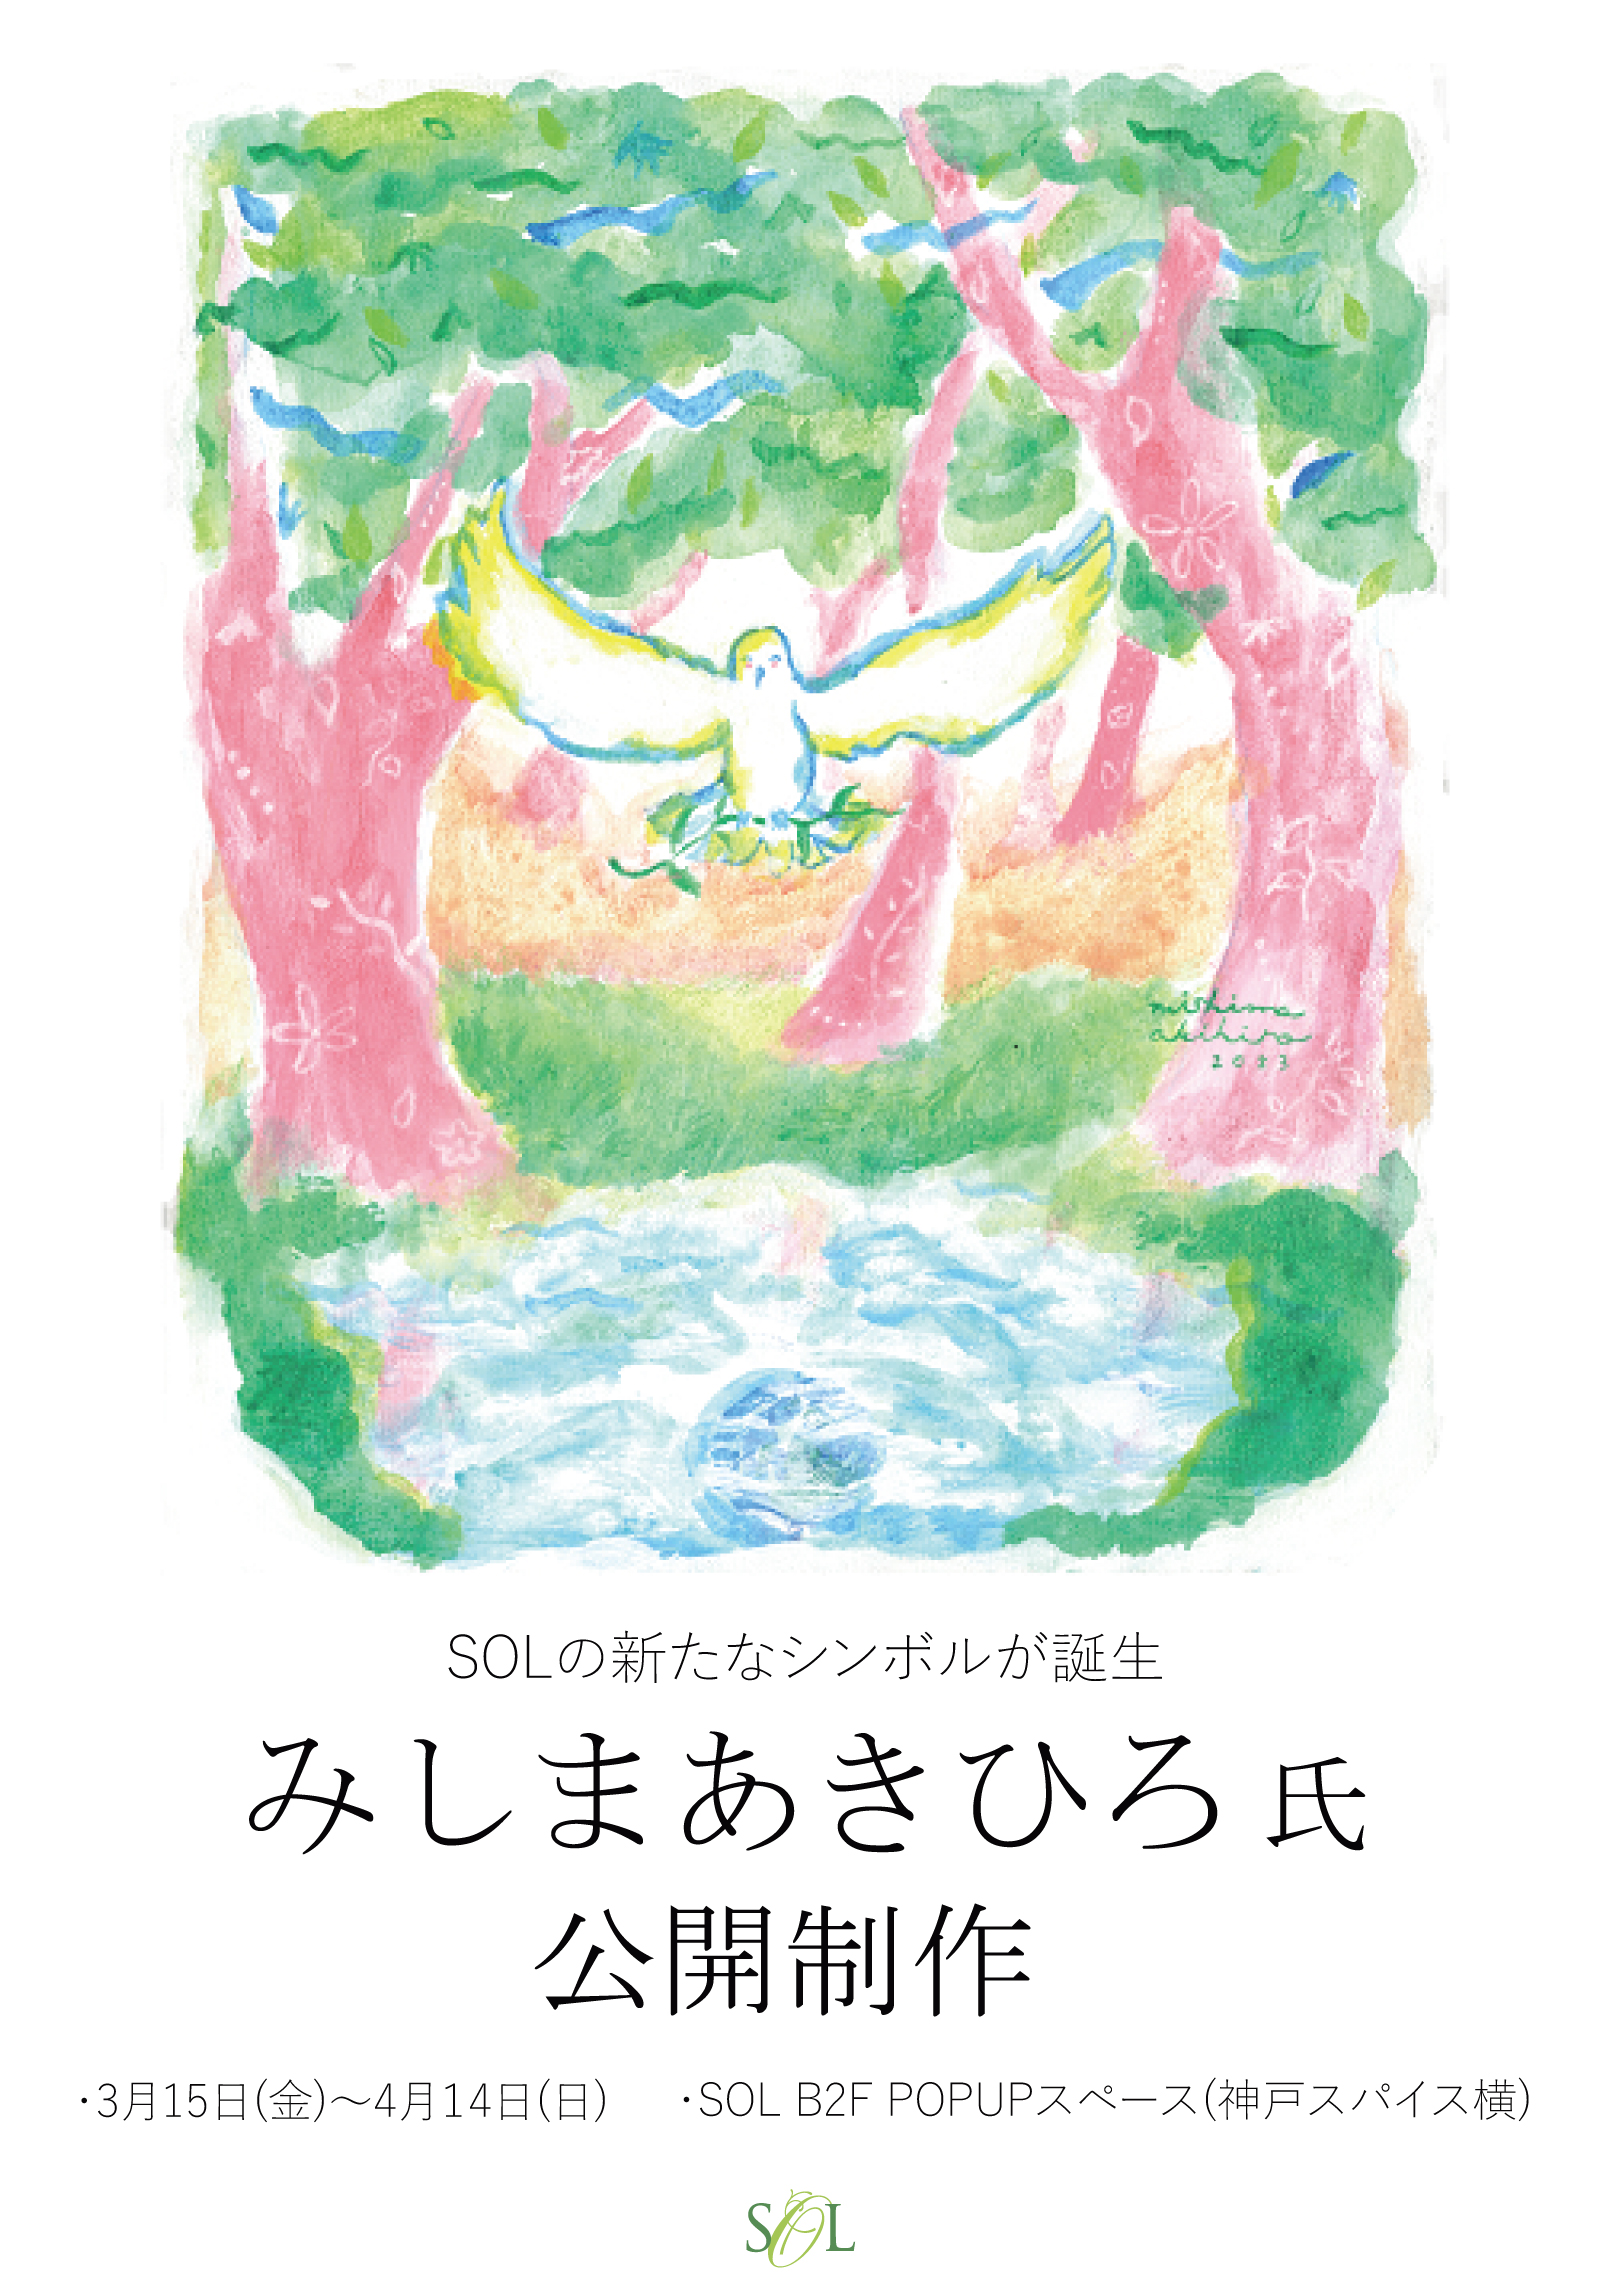 神戸出身イラストレーター「みしまあきひろ」氏 公開制作・SOLの新たなシンボルが誕生